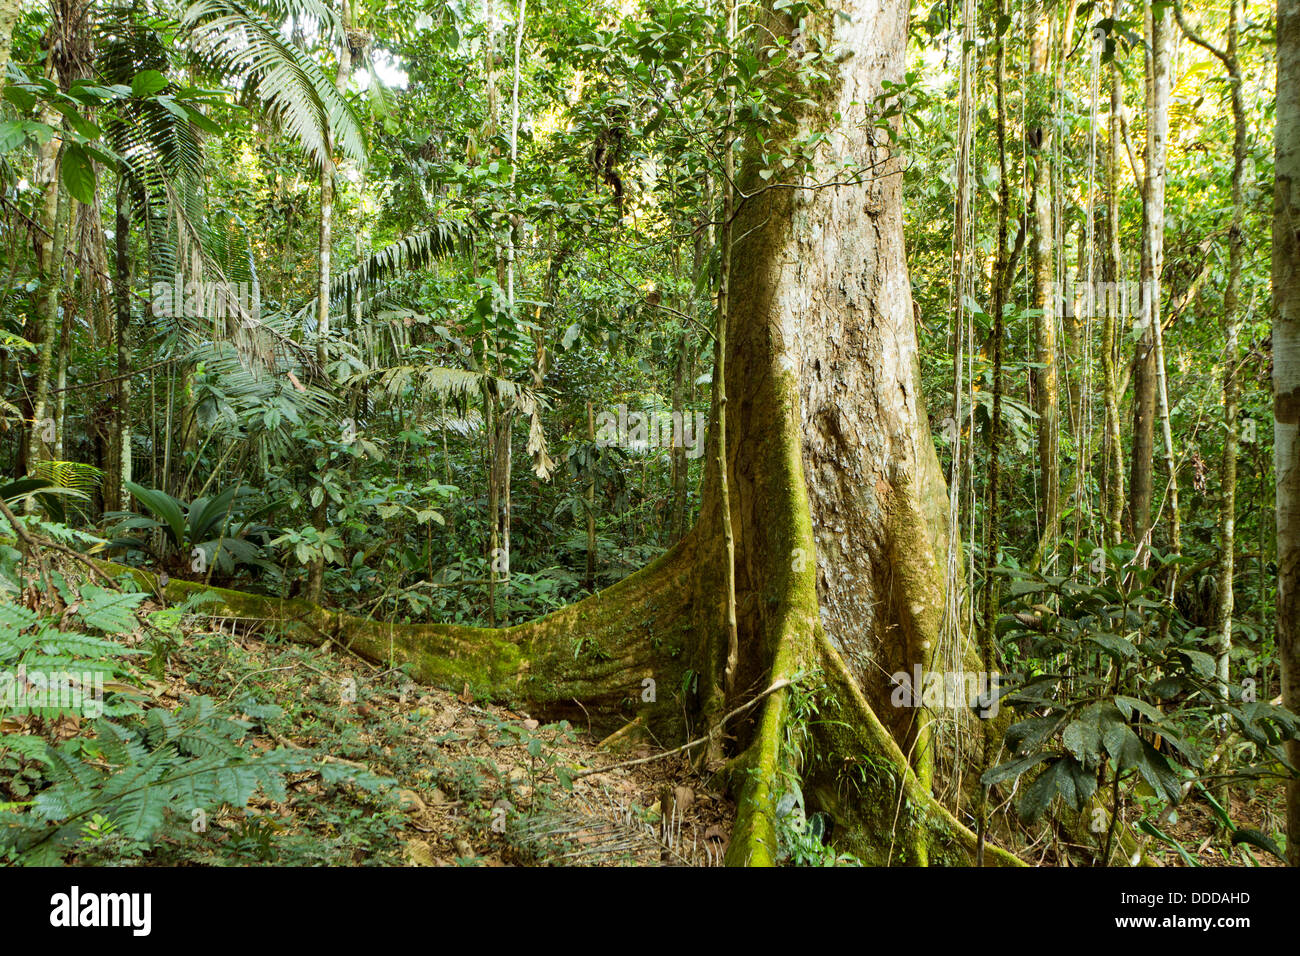 Baum mit Strebepfeiler Wurzeln wachsen im primären Regenwald im ecuadorianischen Amazonasgebiet Stockfoto